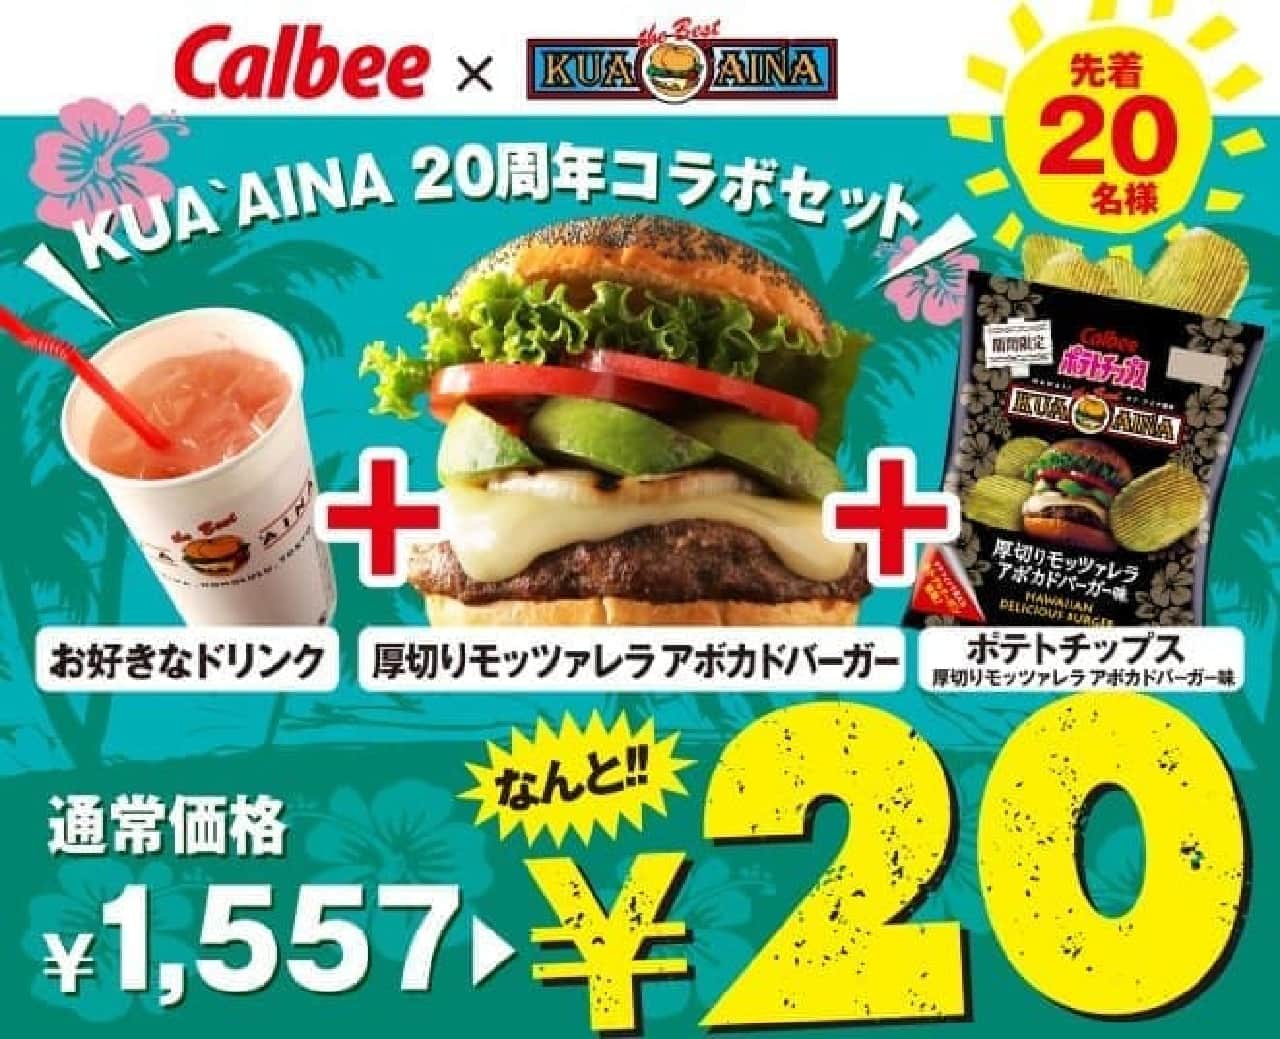 Calbee x Kua Aina "Potato Chips Thick Sliced Mozzarella Avocado Burger Flavor"